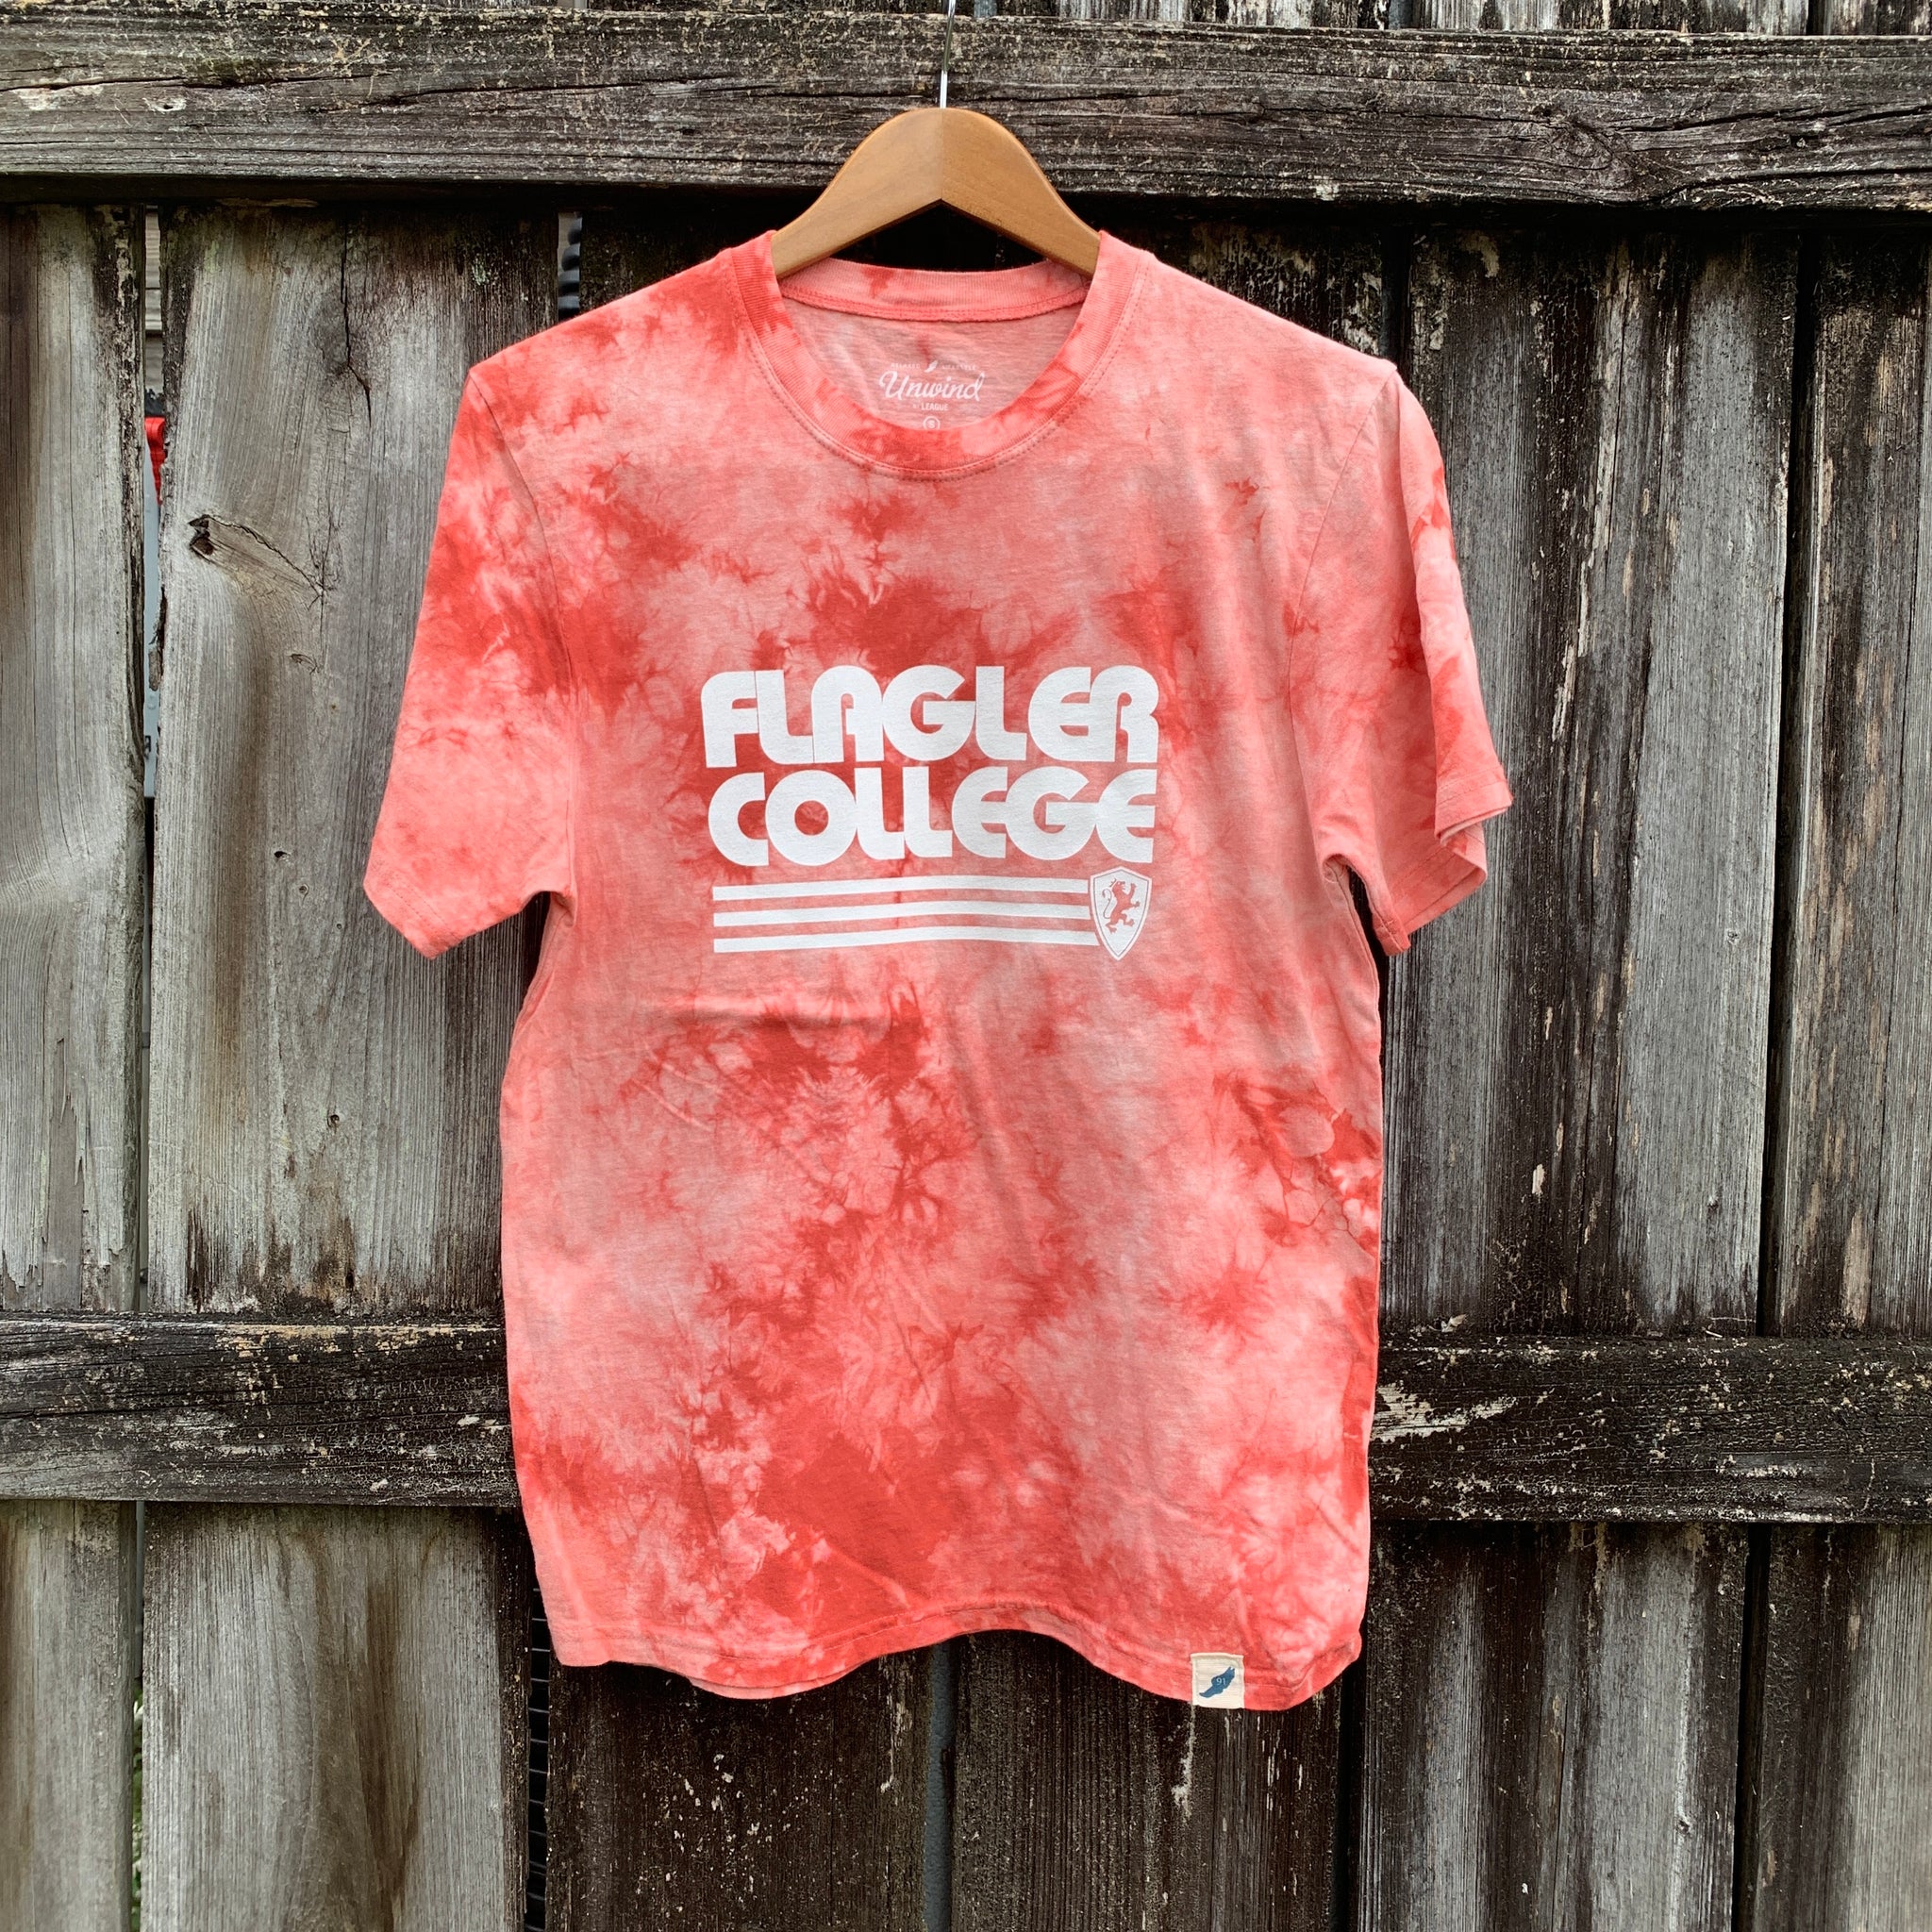 Flagler College Retro Crinkle Dye T-Shirt